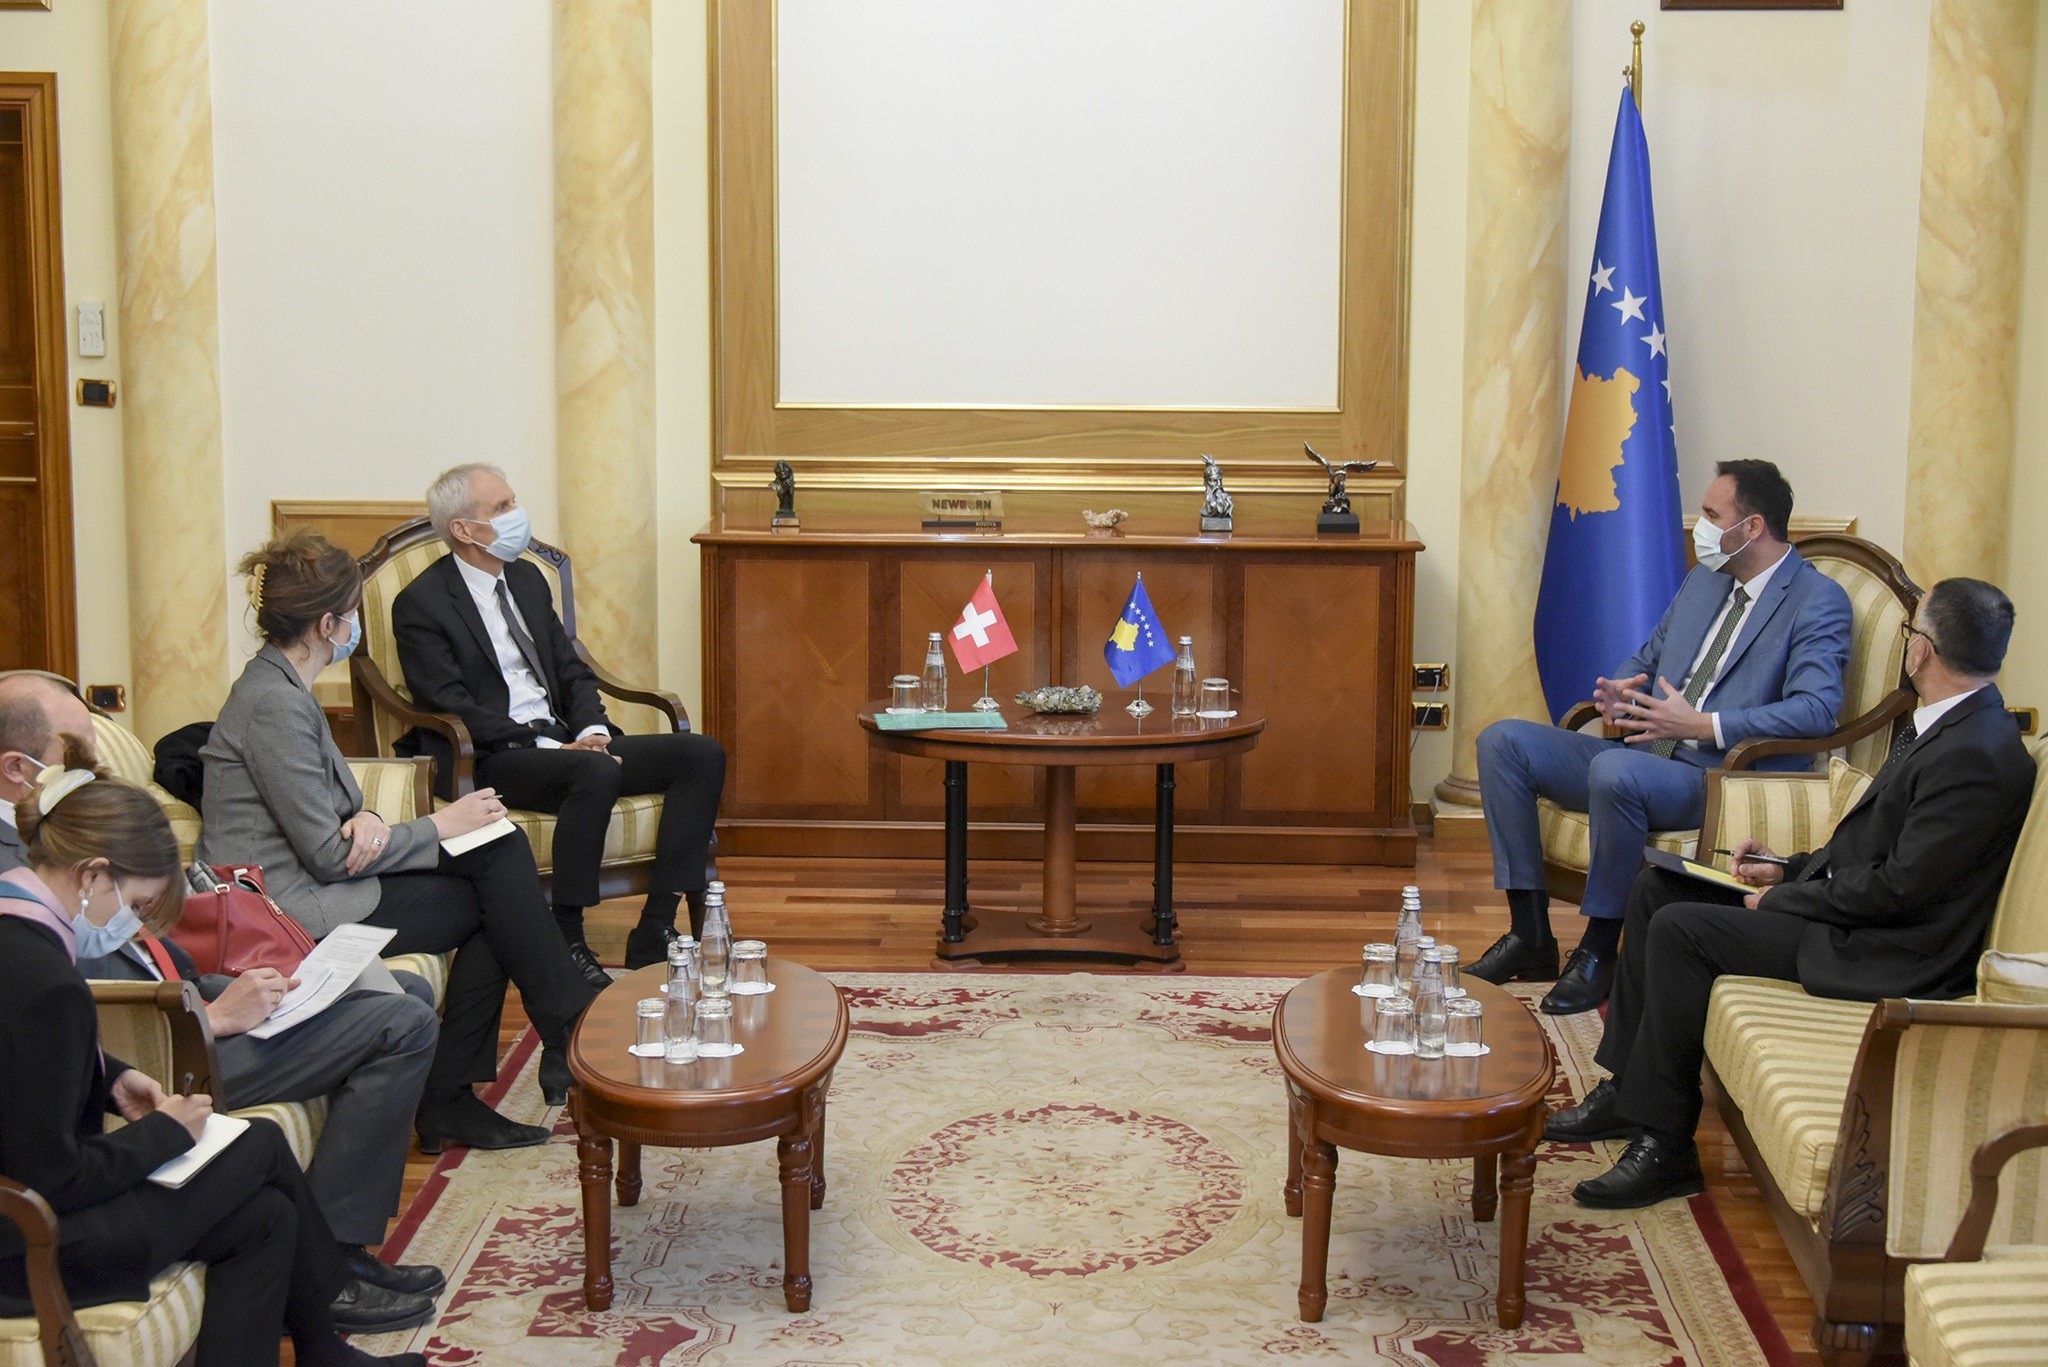 Konjufca: Zvicra është një vend mik dhe partner strategjik i Kosovës